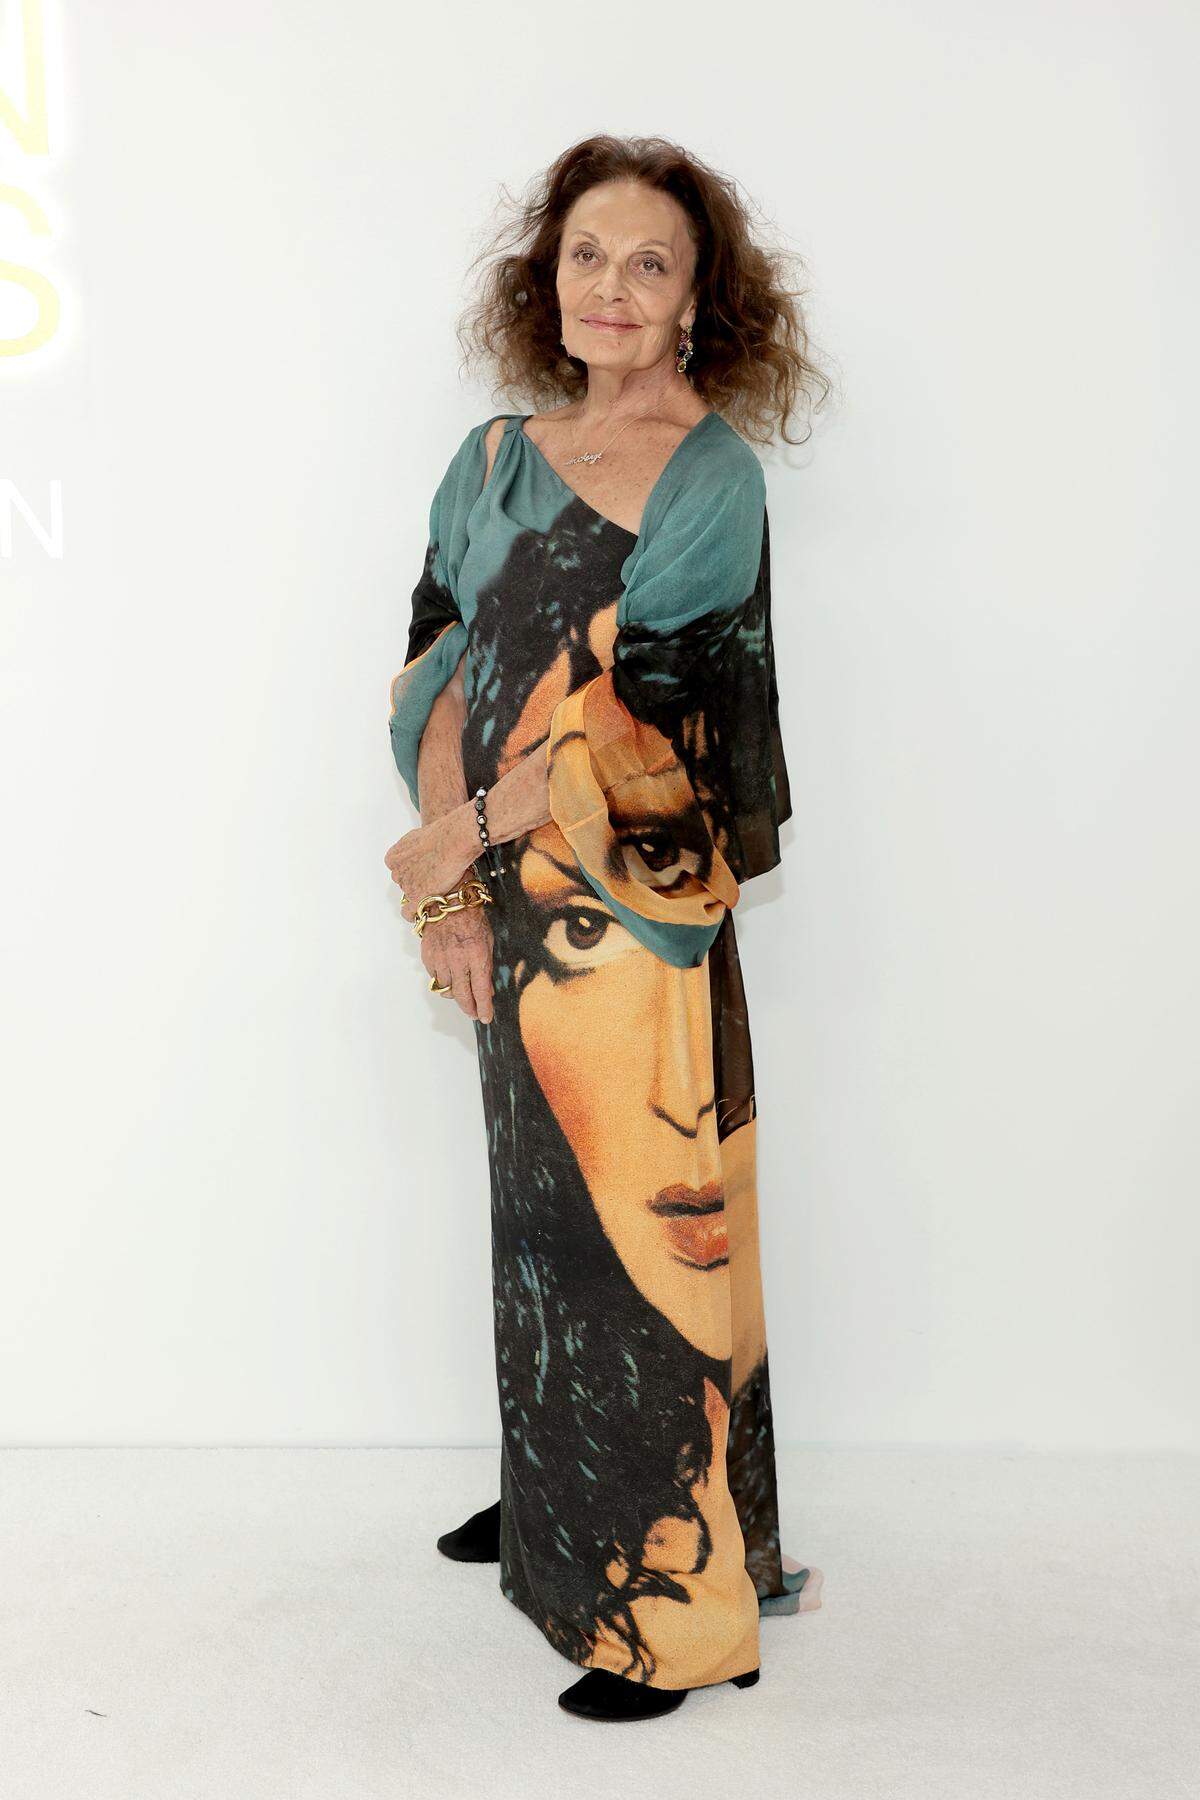 Modedesignerin Diane von Furstenberg trug eine Art asymmetrisches Kaftankleid, bedruckt mit der jüngeren Version ihrer selbst.